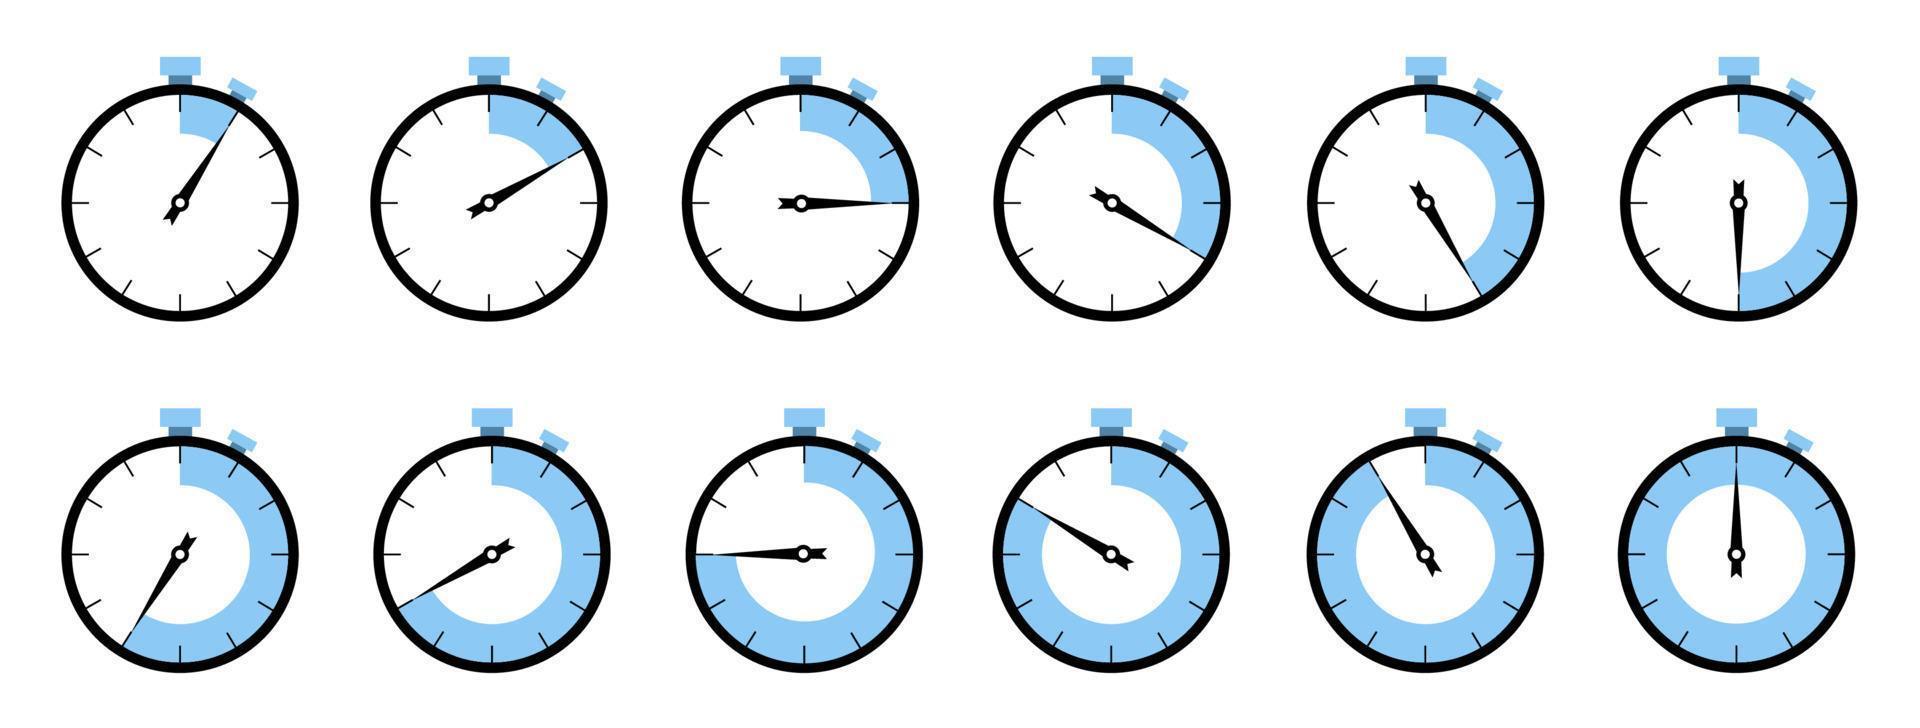 ensemble horloge, alarme, montre, chronomètre vecteur